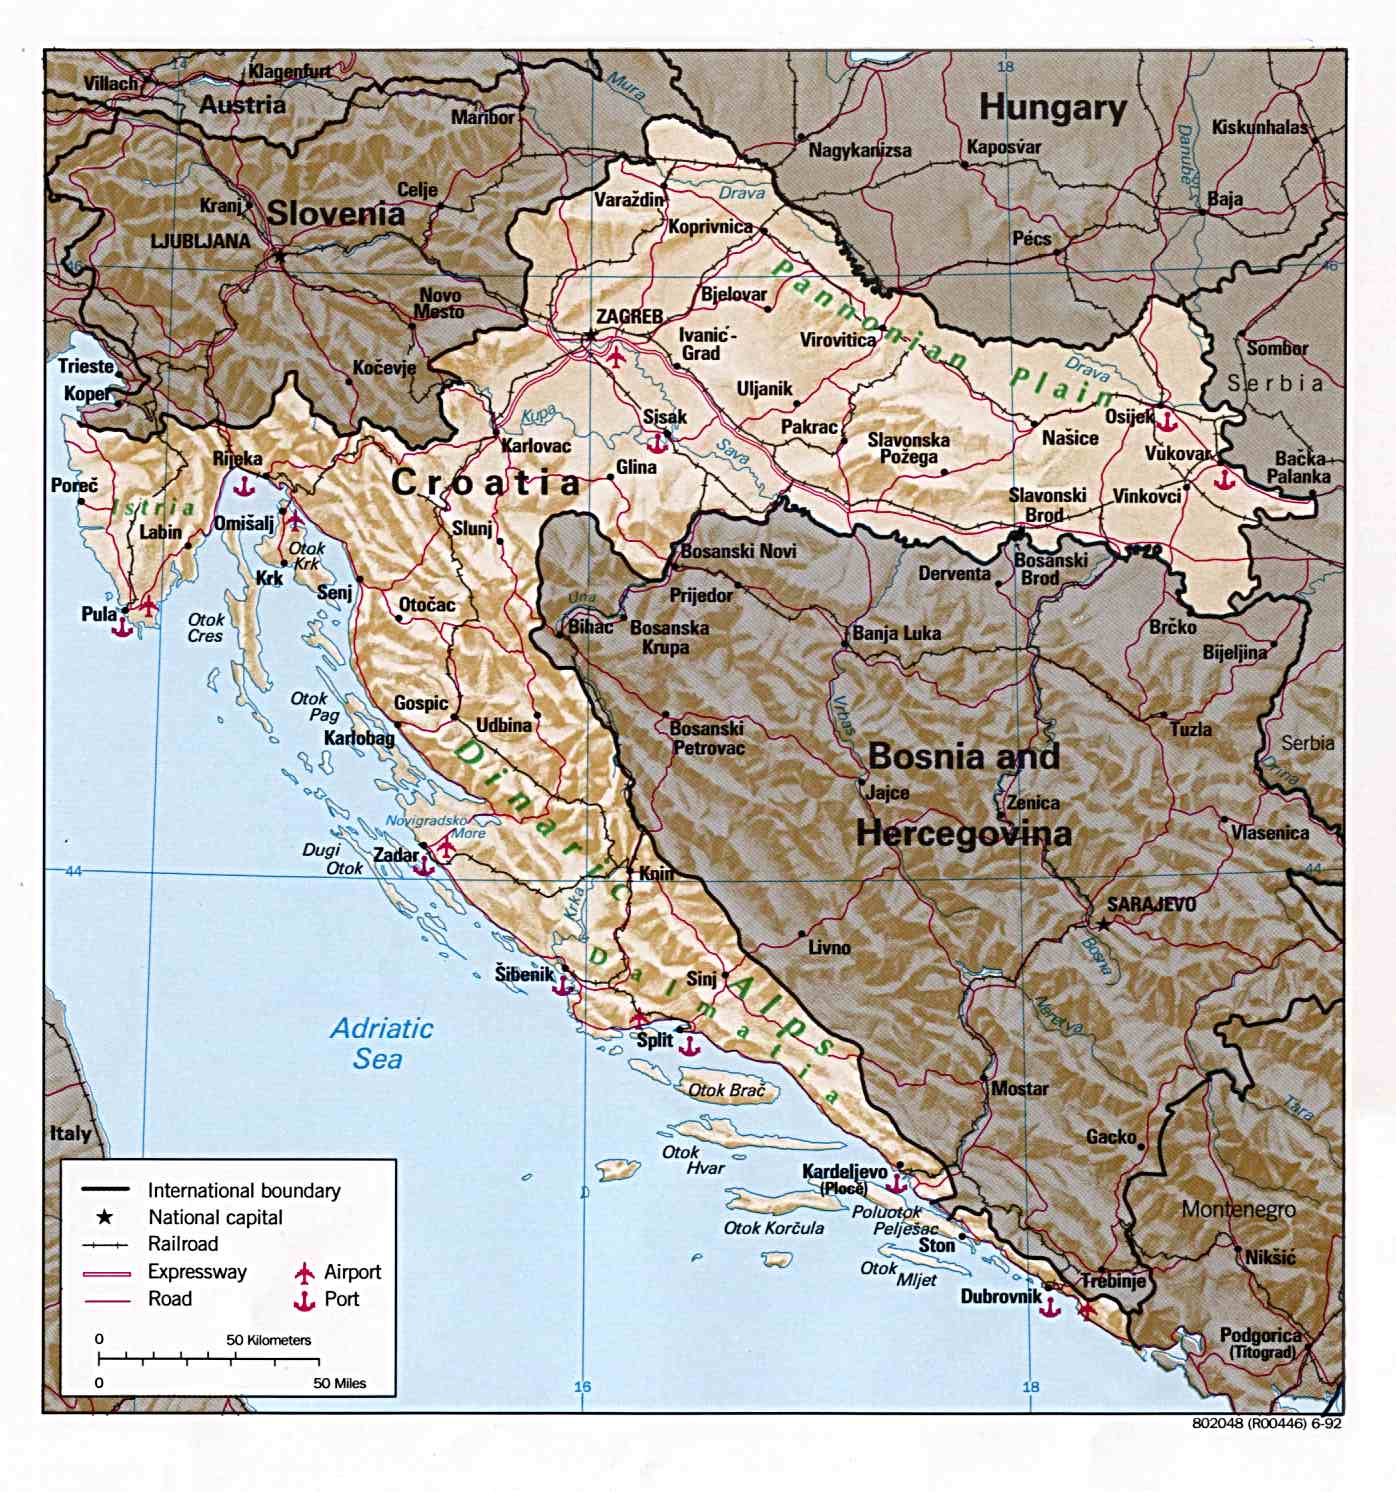 tomtom karta hrvatske Index of /maps/europe tomtom karta hrvatske